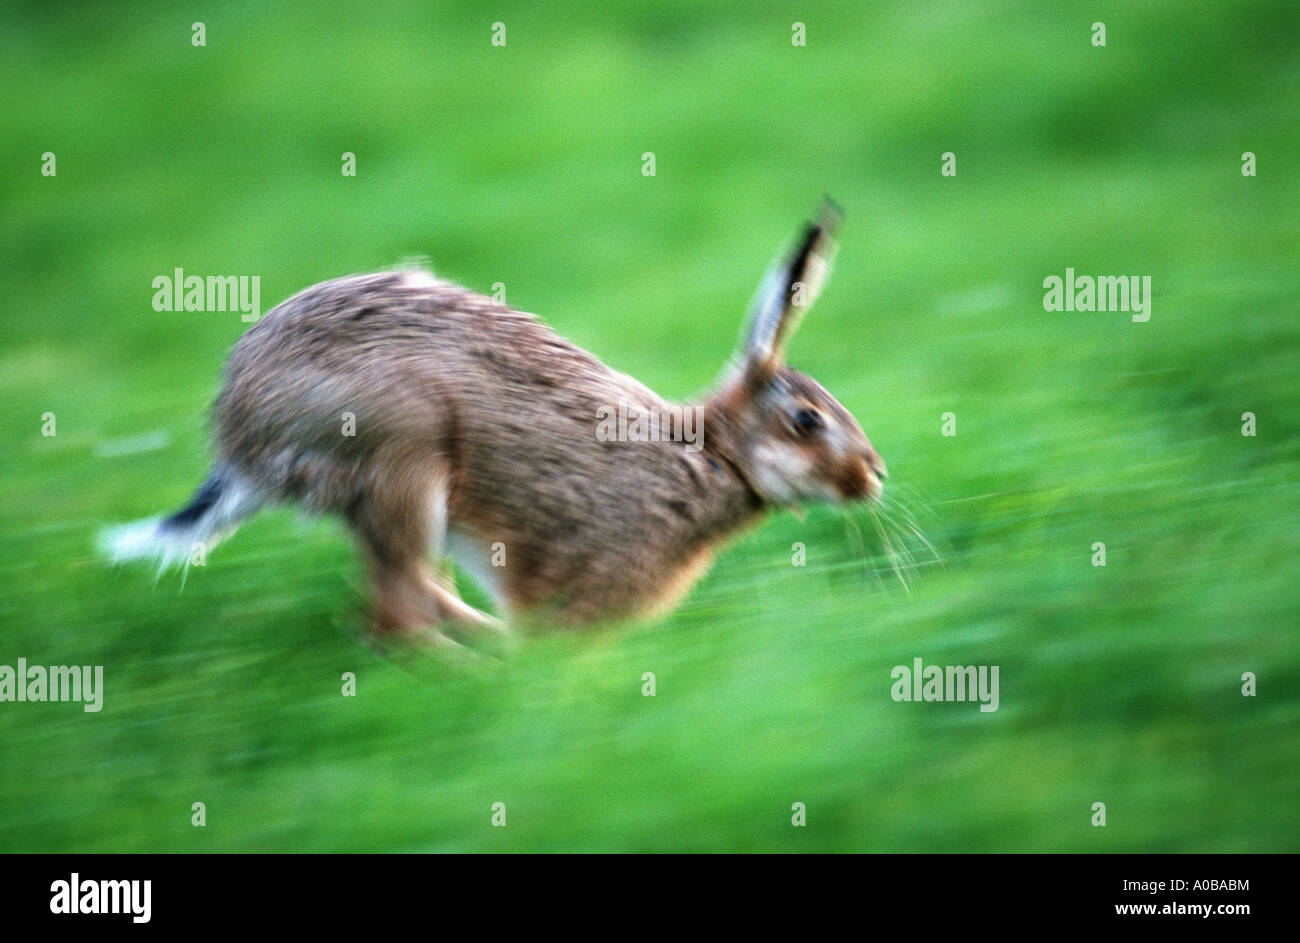 European hare (Lepus europaeus), running Stock Photo